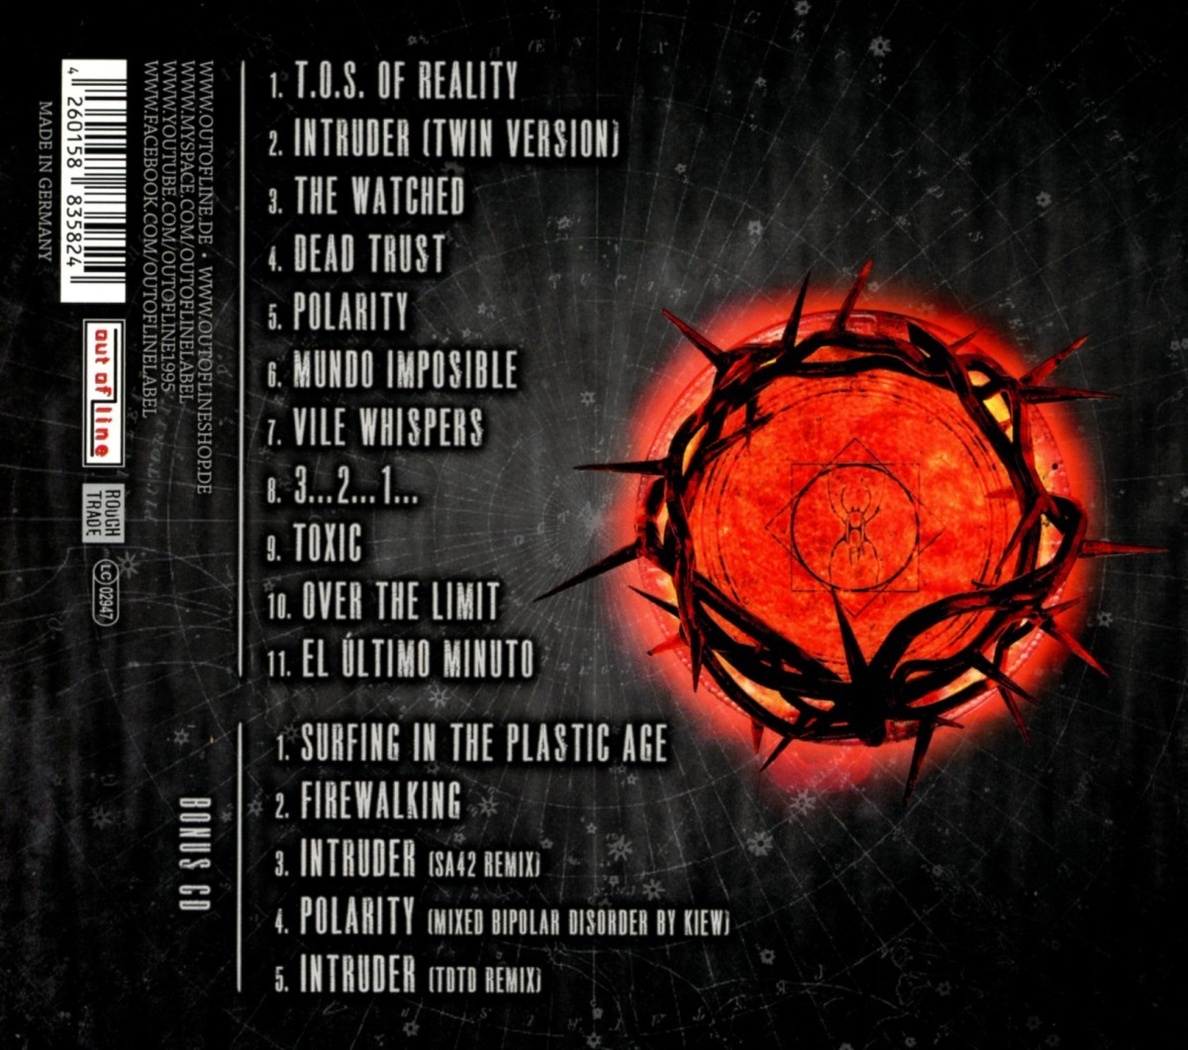 El Ultimo Minuto Limited Edition CD von Hocico bei